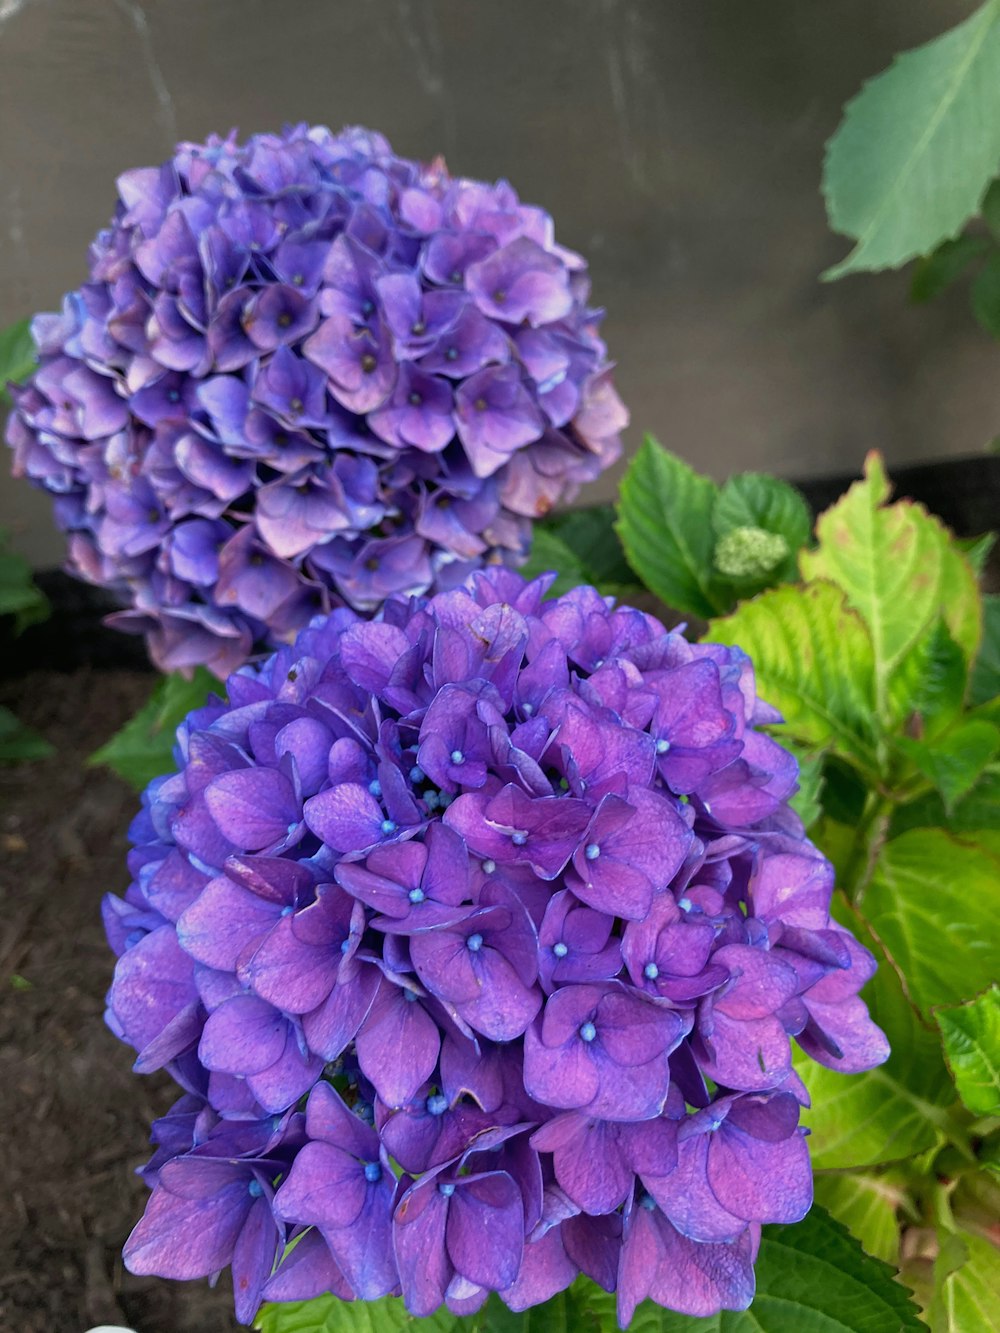 purple hydrangeas in bloom during daytime